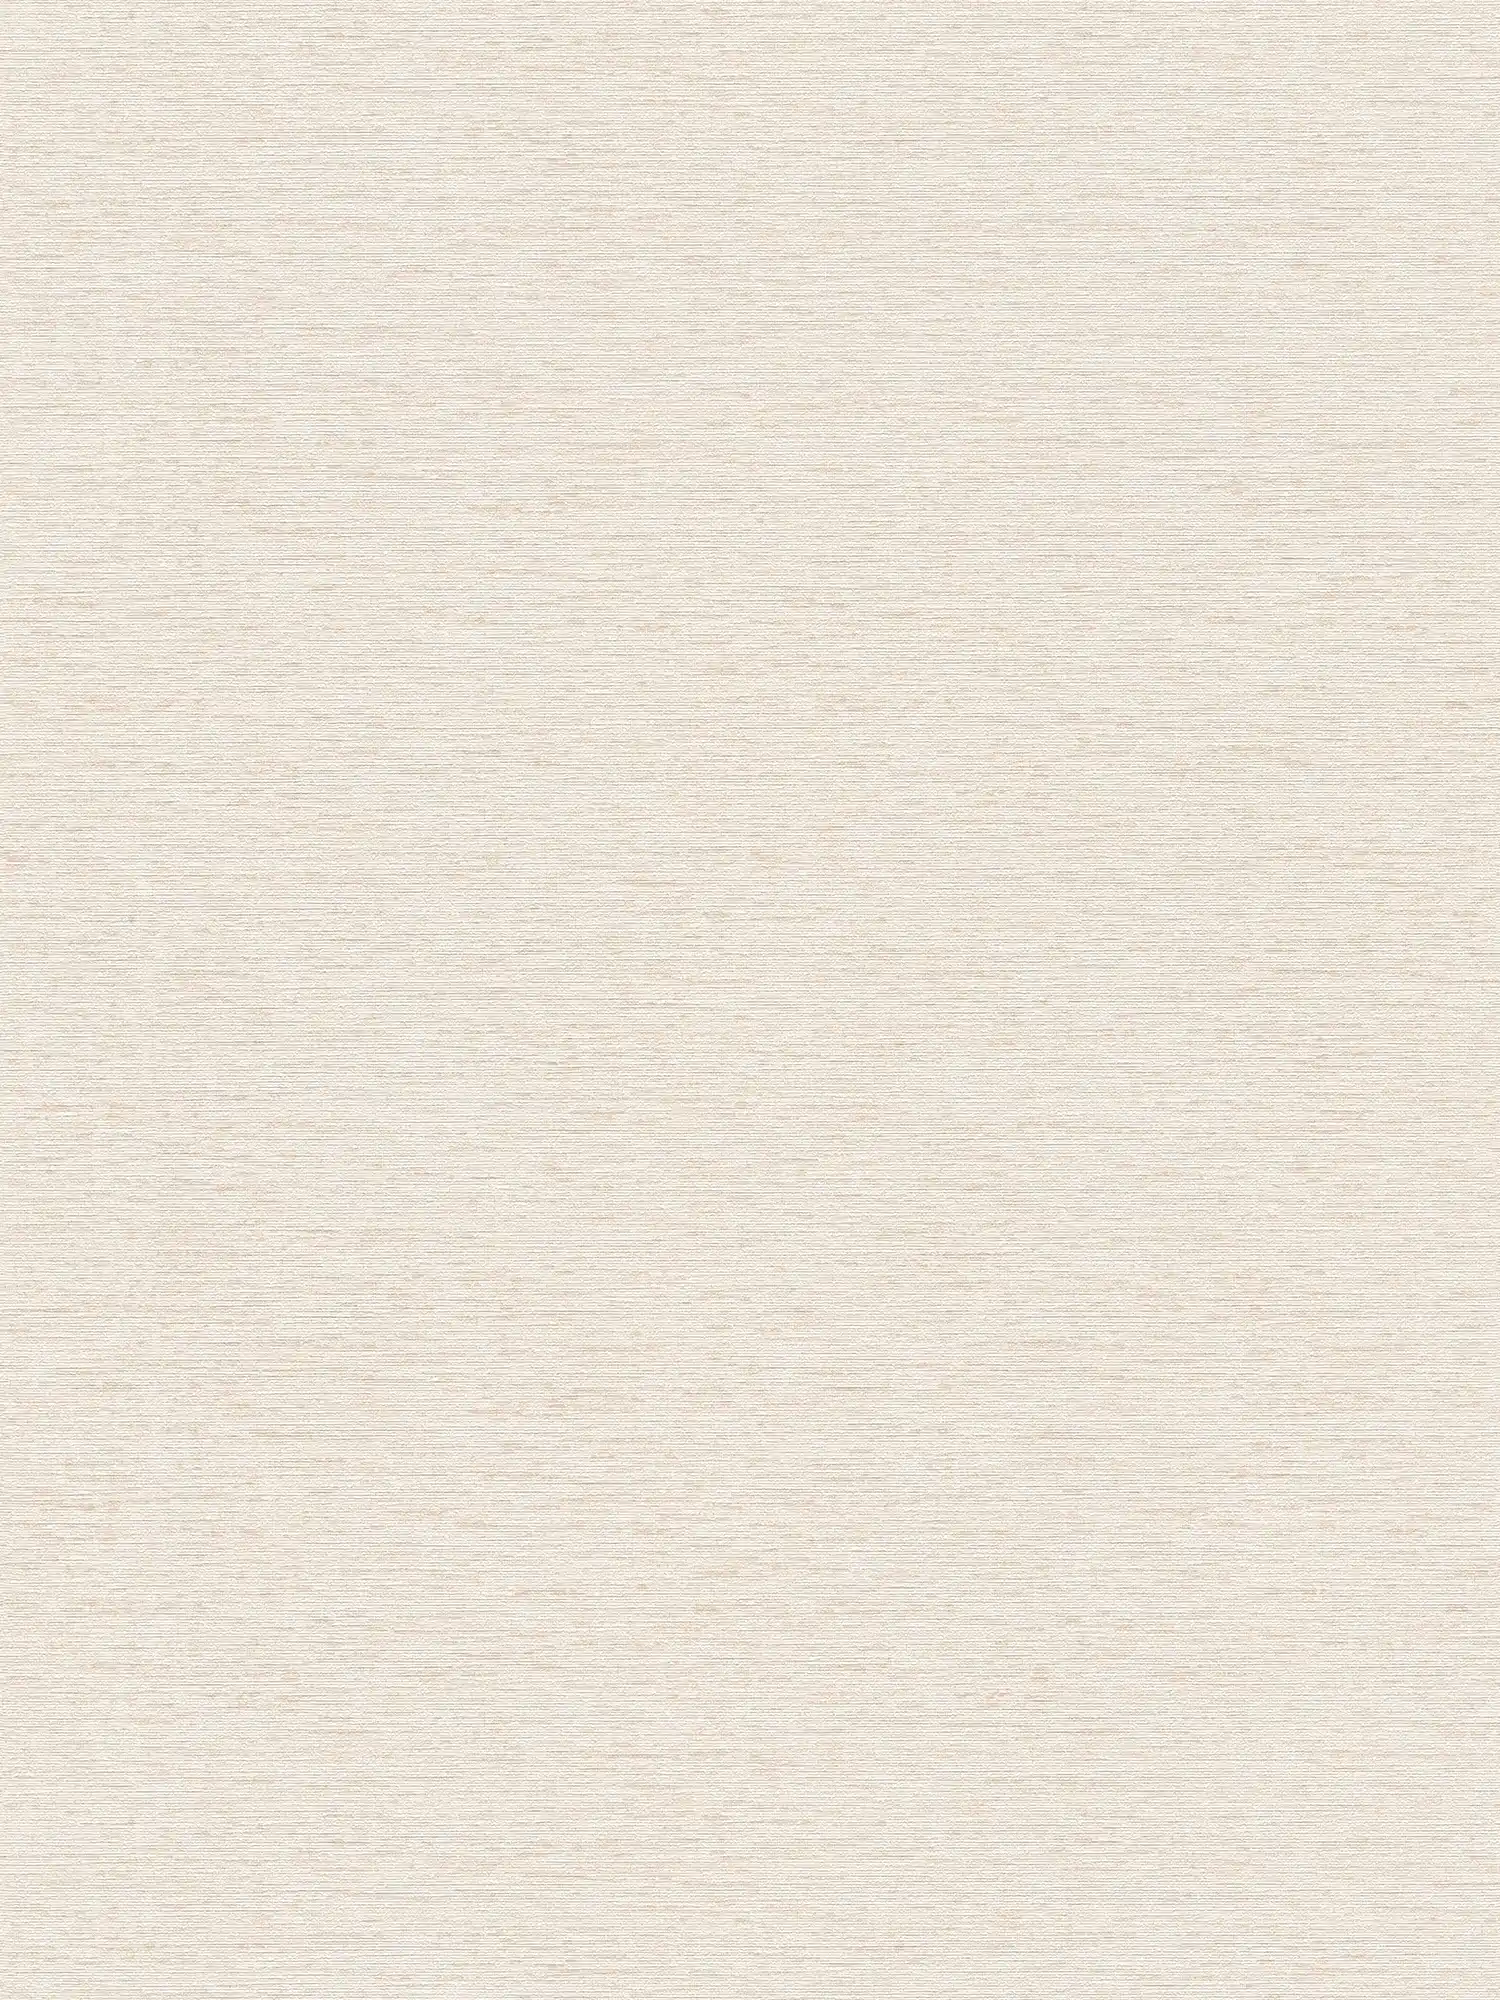 Einfarbige Tapete mit Gewebestruktur, matt – Creme, Weiß, Beige
